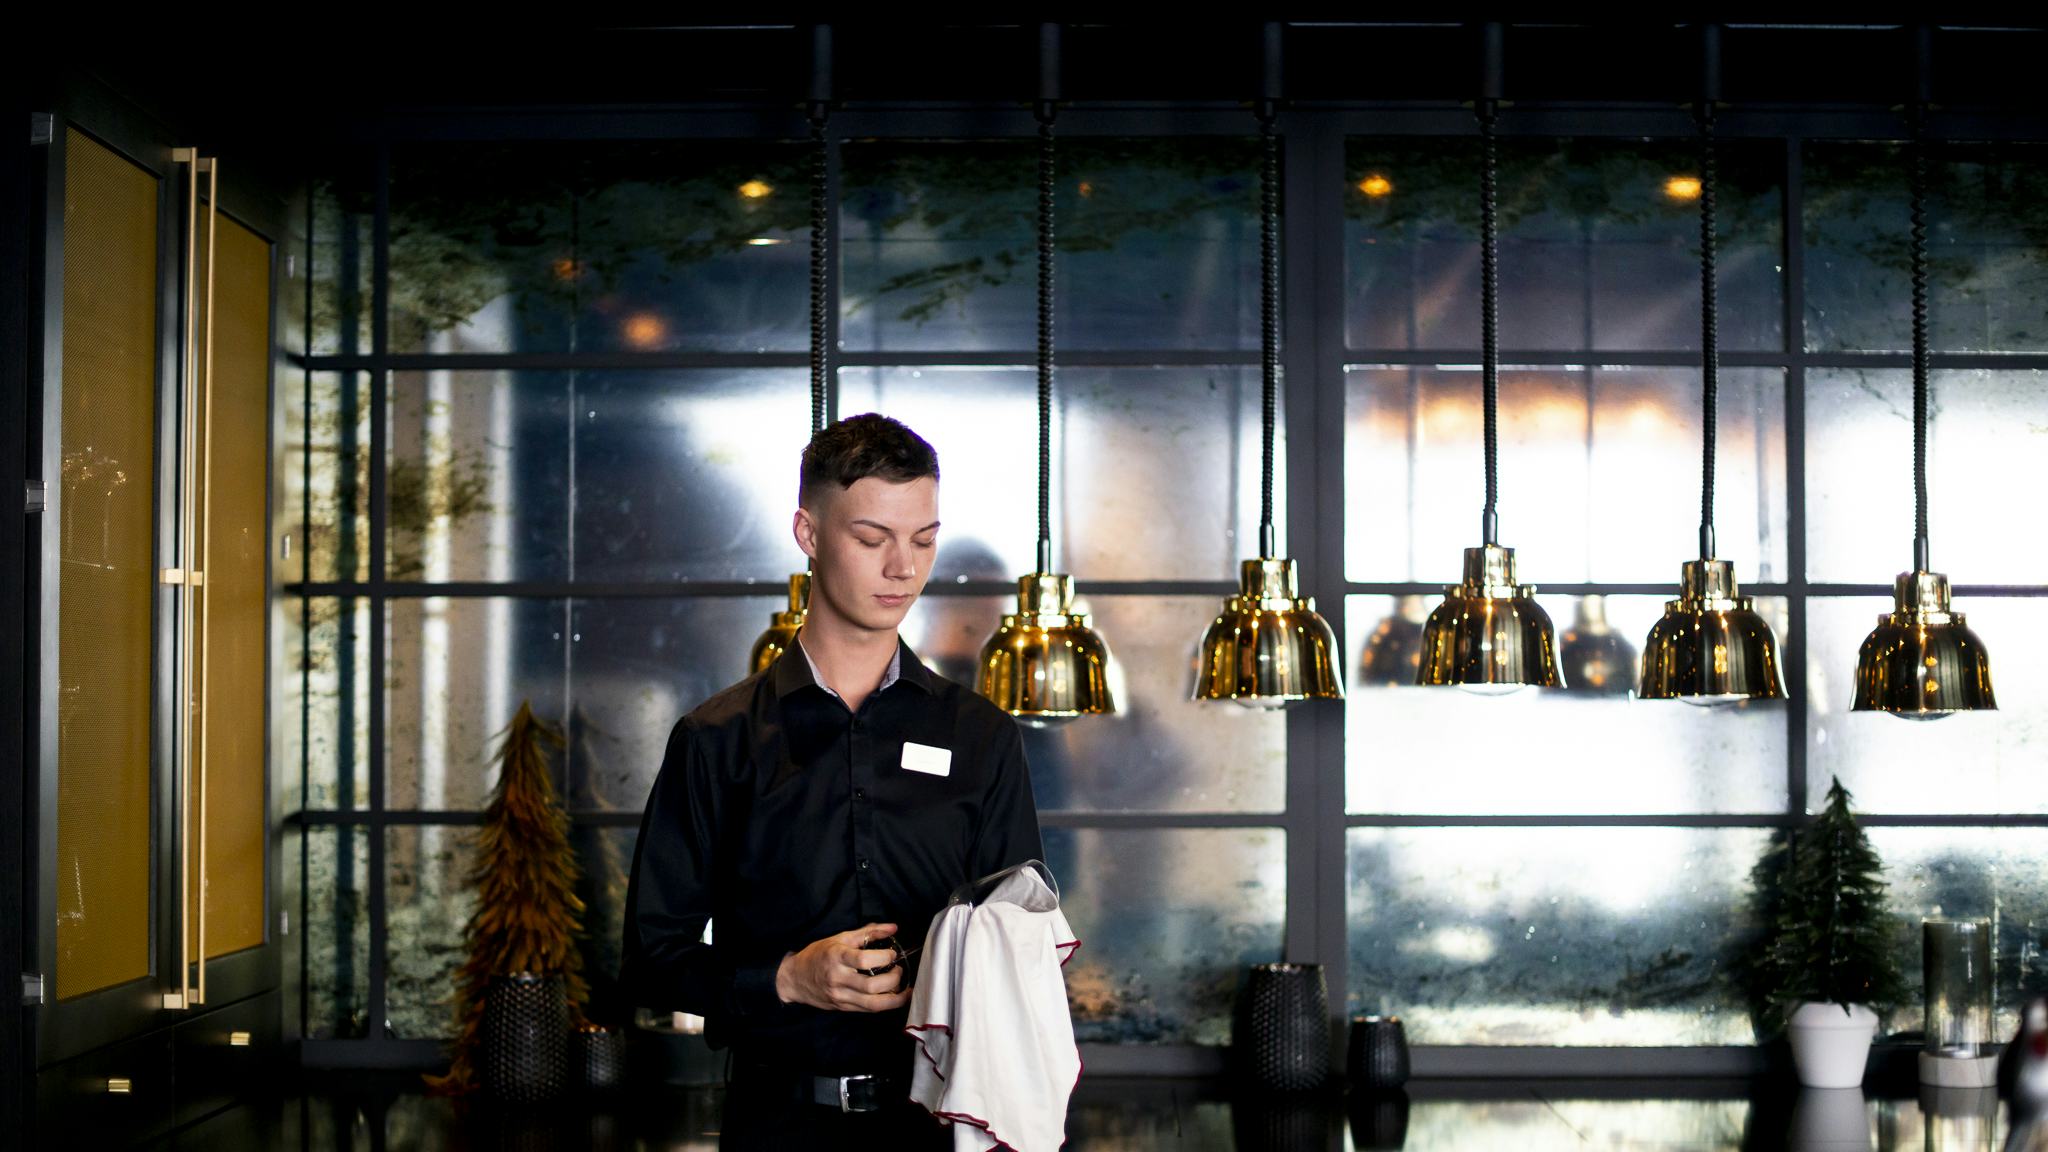 Gustav står i en restaurang där han jobbar och torkar ett glas.